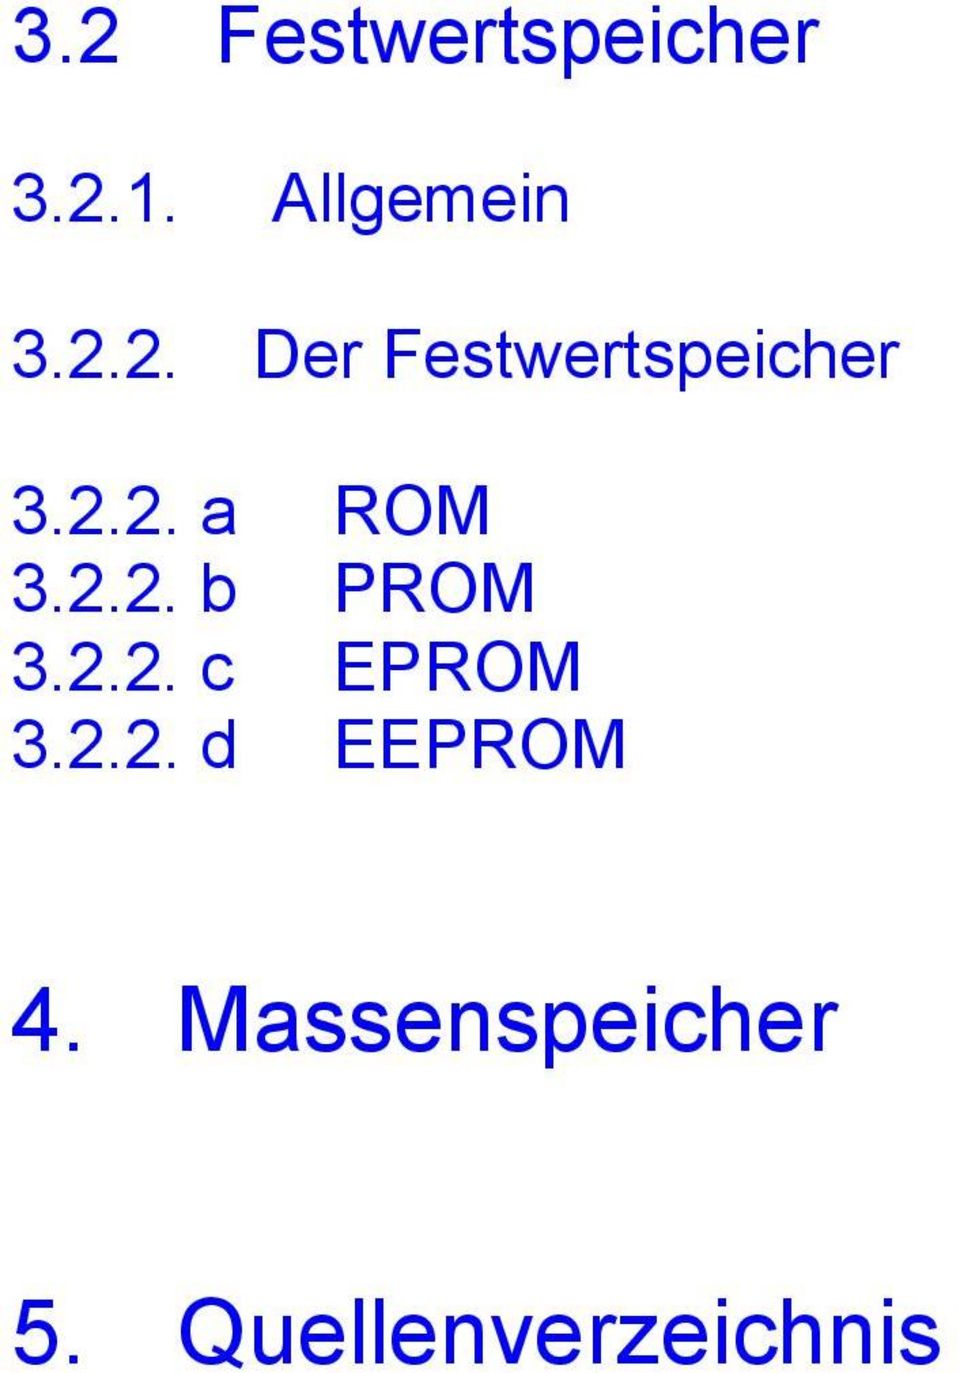 2.2. b PROM 3.2.2. c EPROM 3.2.2. d EEPROM 4.